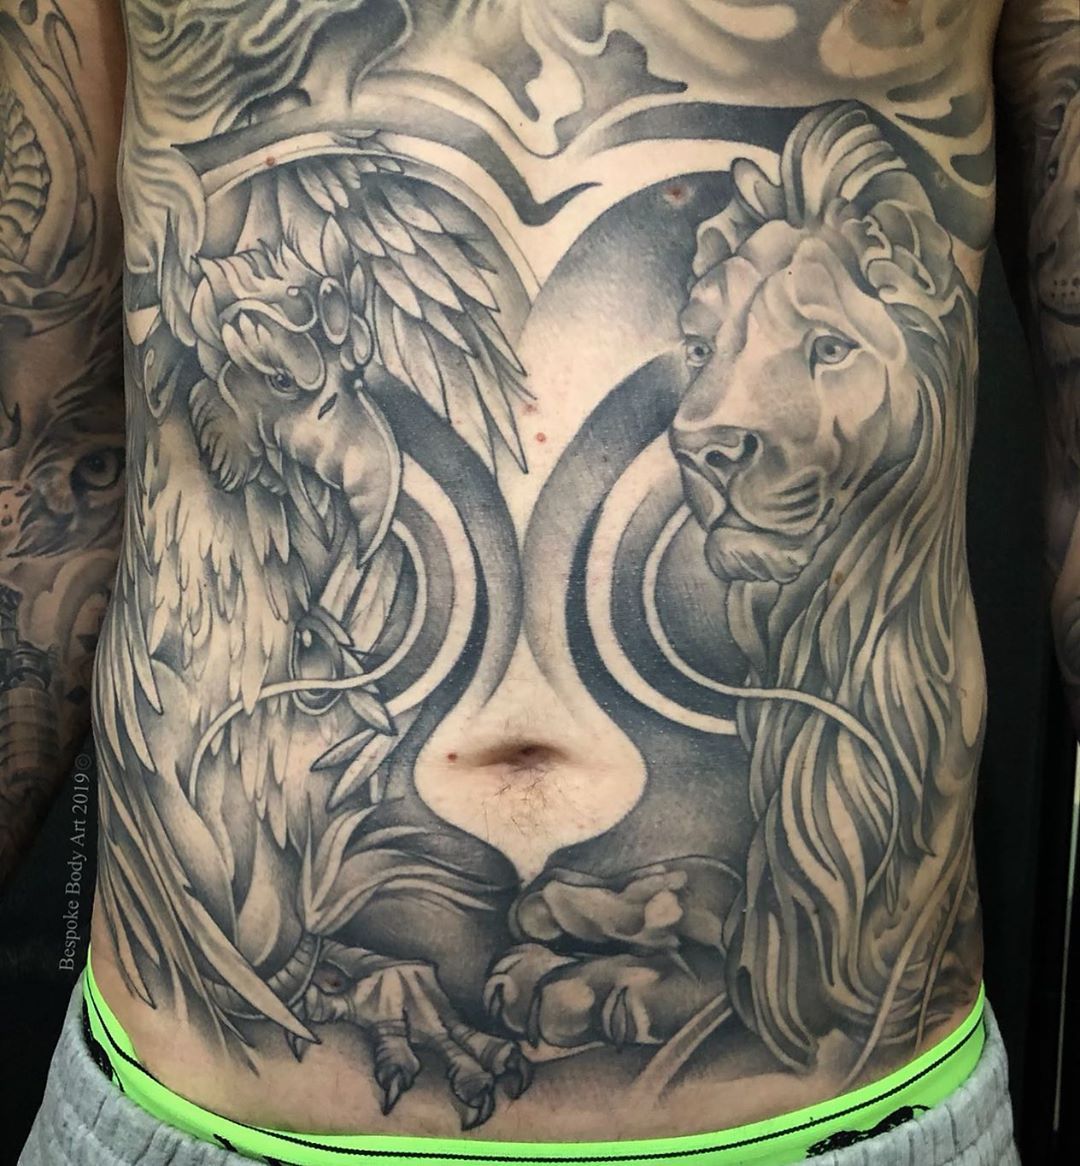 Awesome Lion Tattoo On Stomach  Tatuagens 2017 Tatuagem de leão Tatuagem